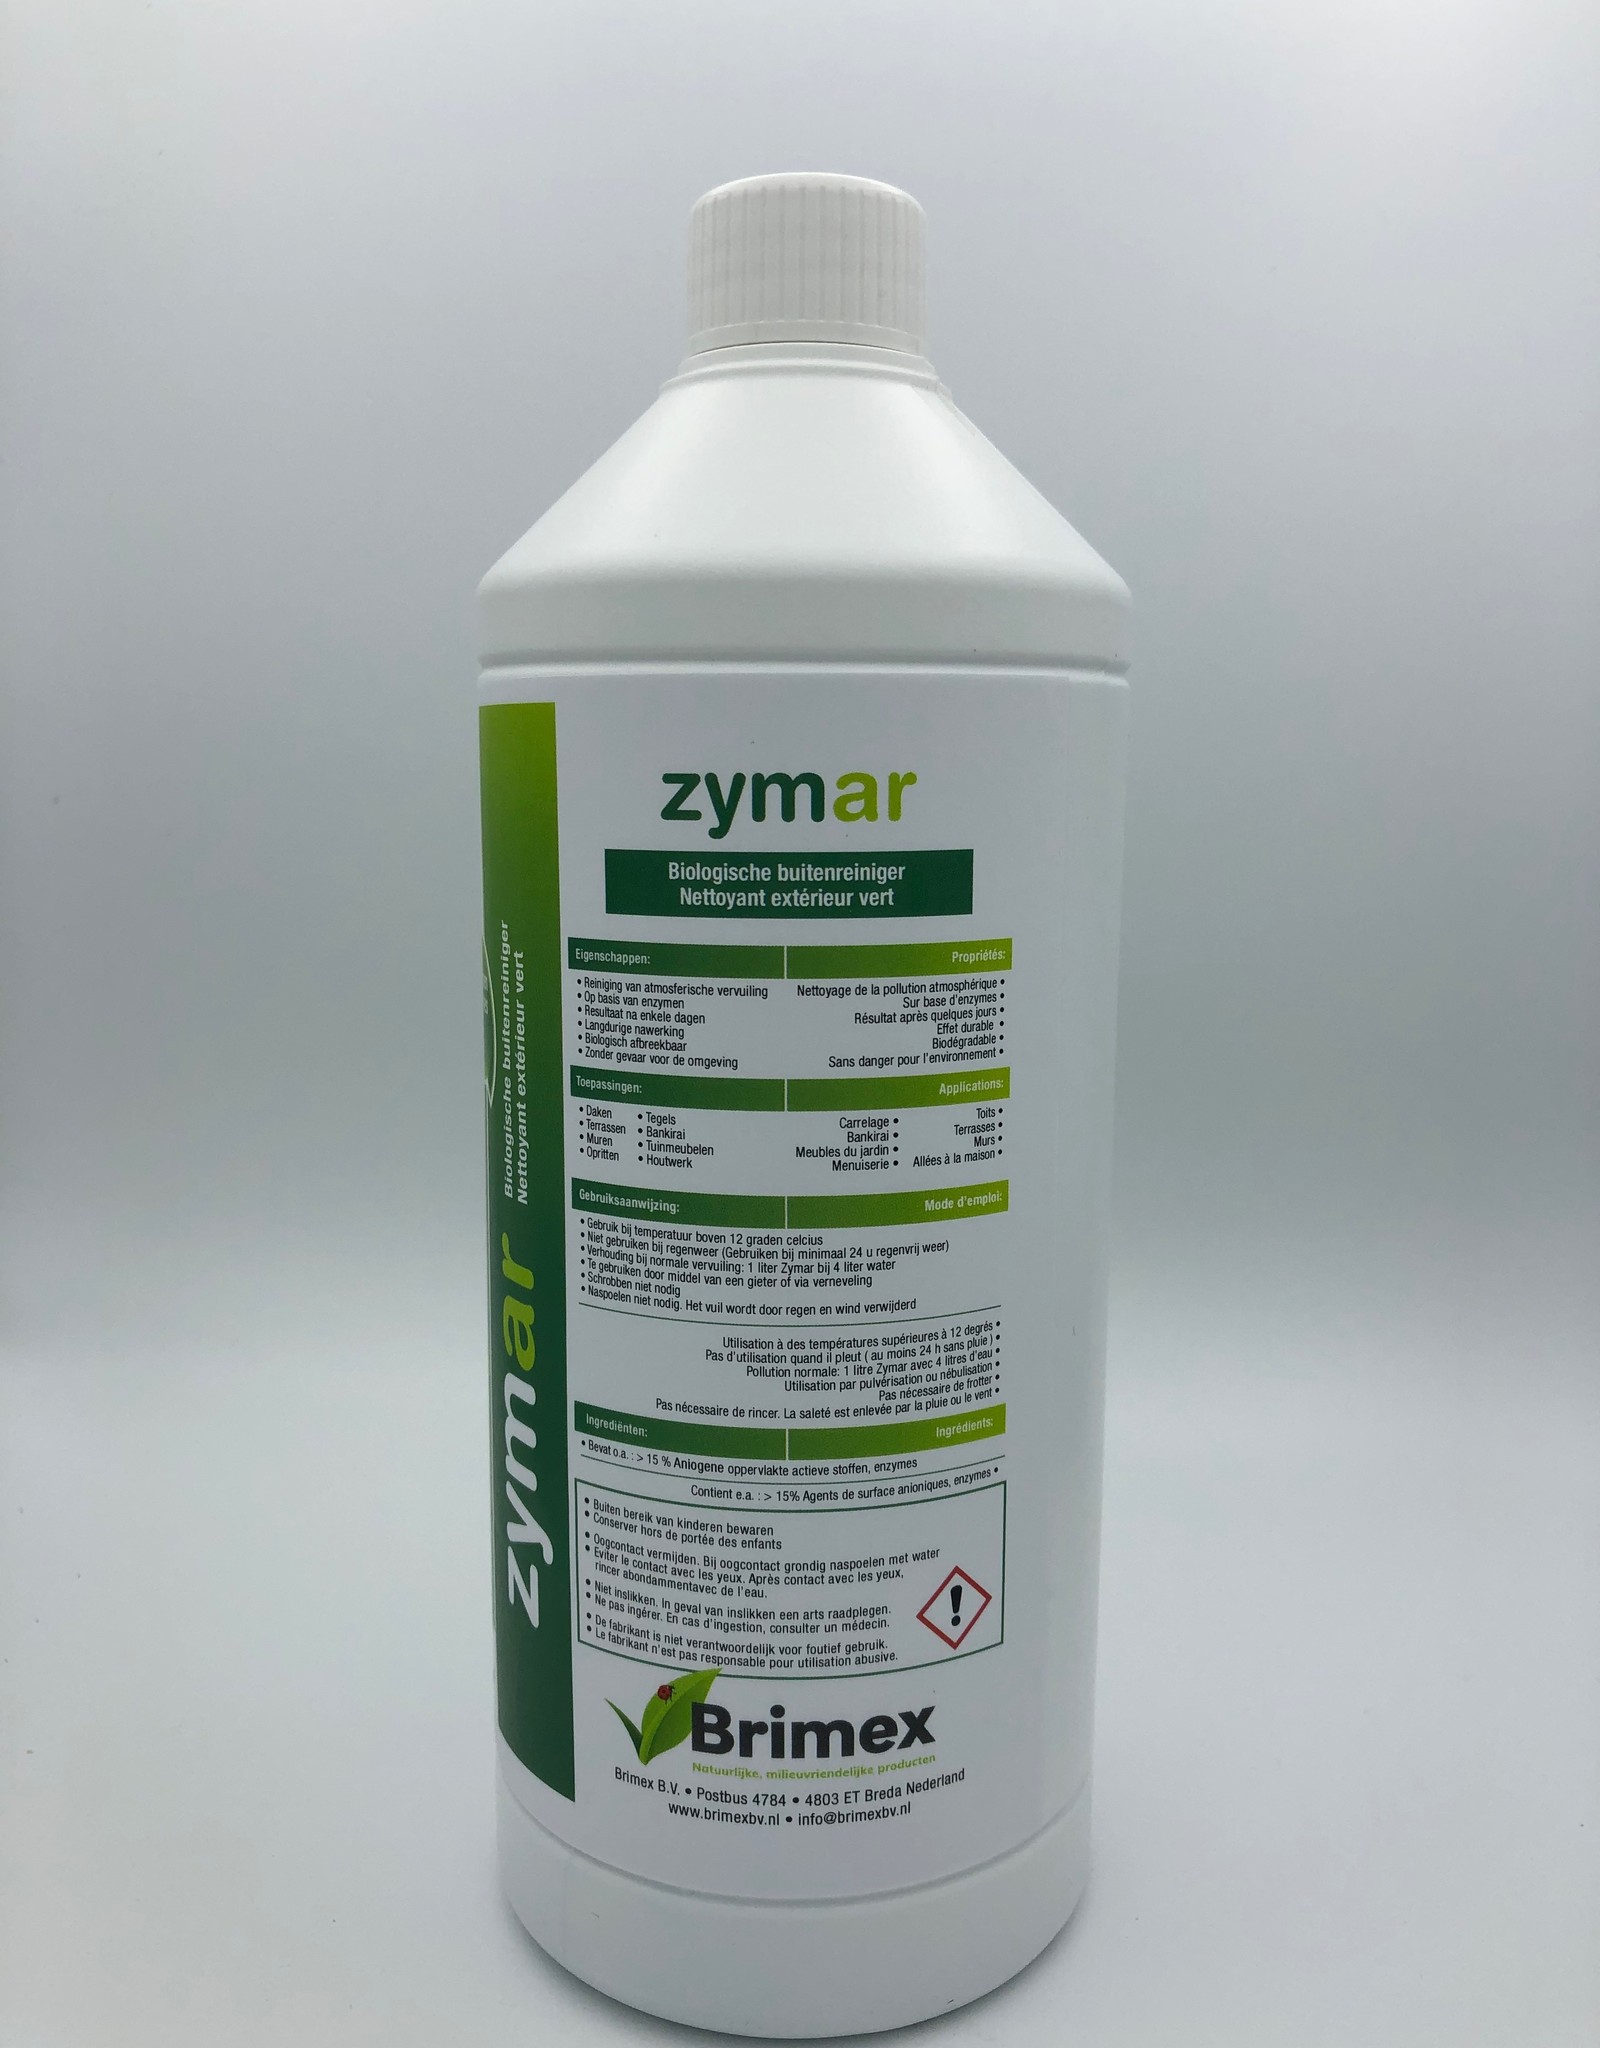 Brimex Brimex Zymar biologische buitenreiniger op basis van enzymen.